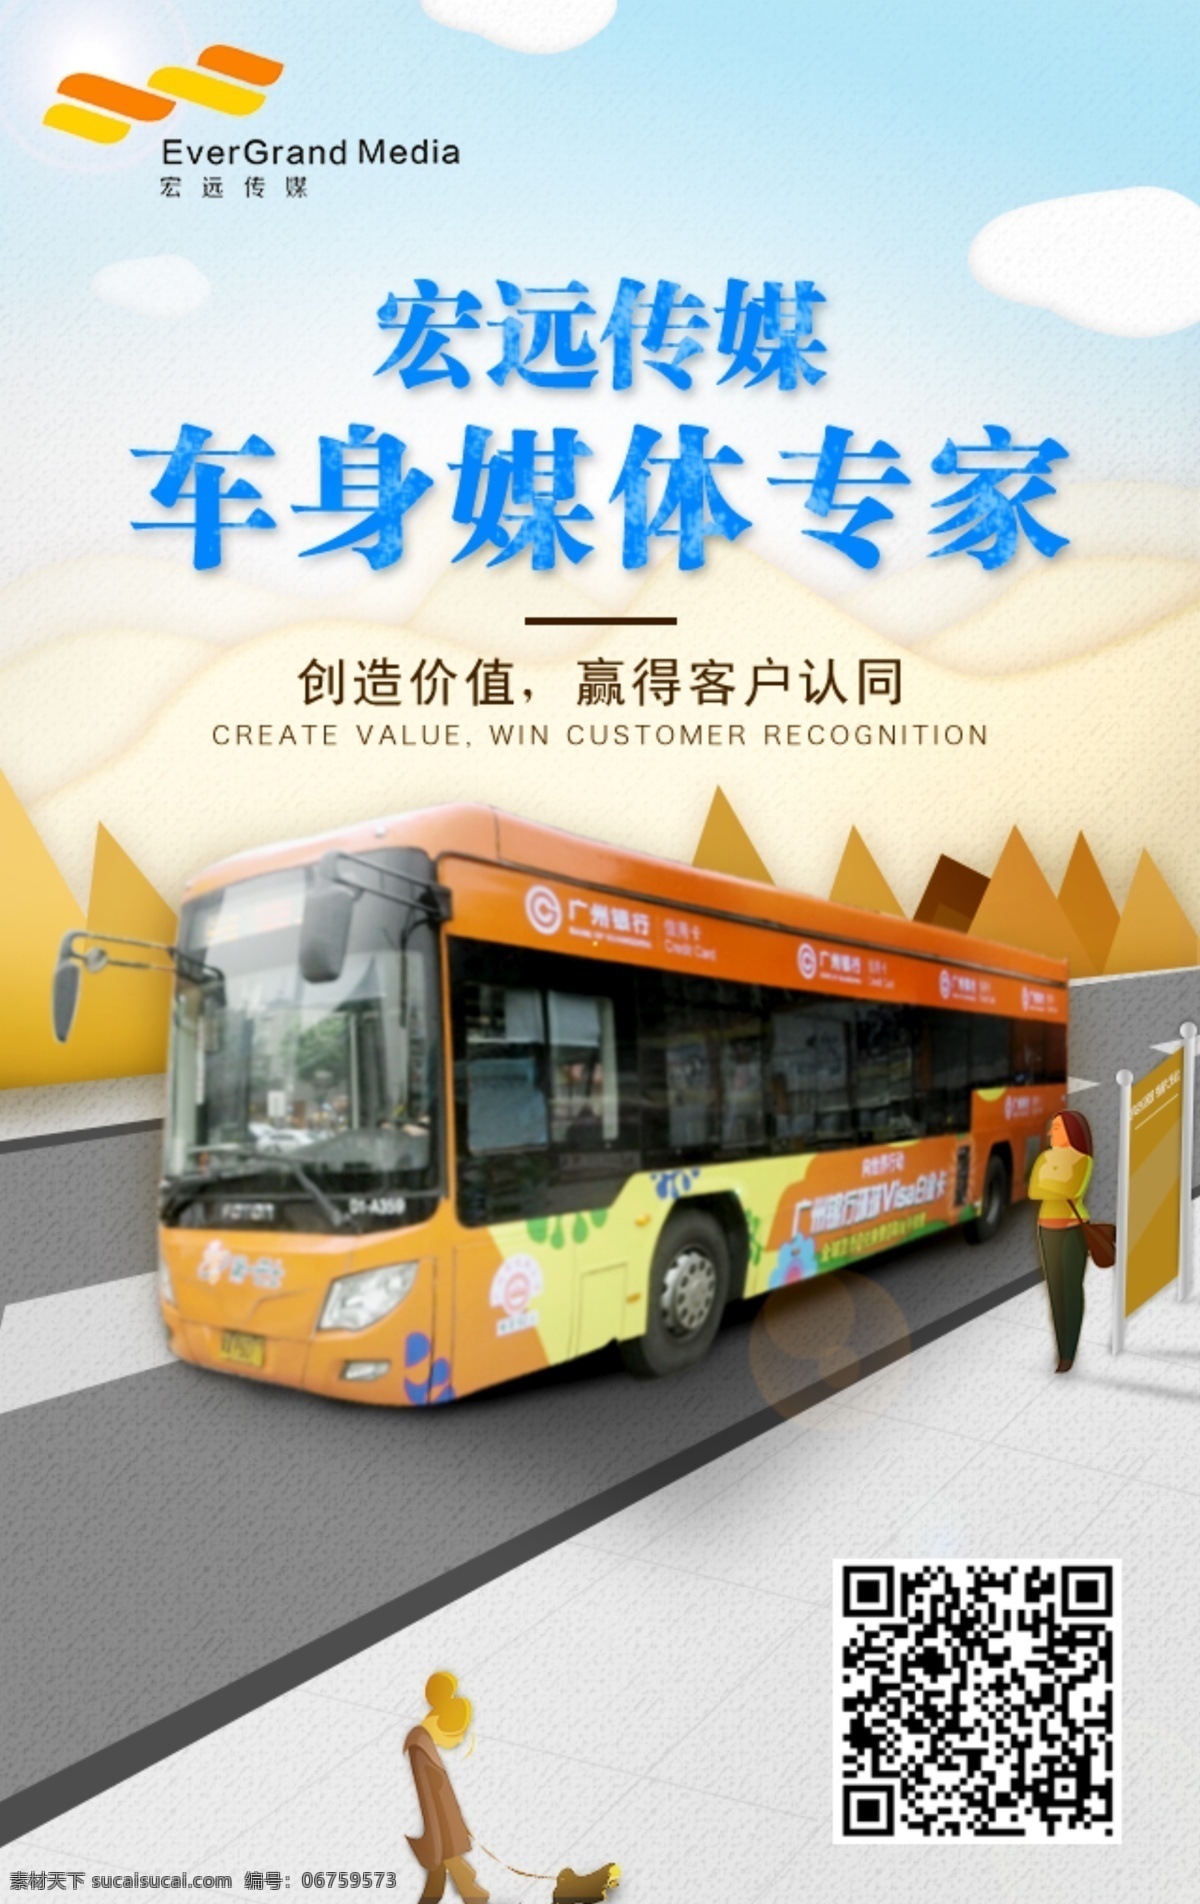 宏远 传媒 公交车 广告 h5 插画 车身广告 公交车广告 web 界面设计 中文模板